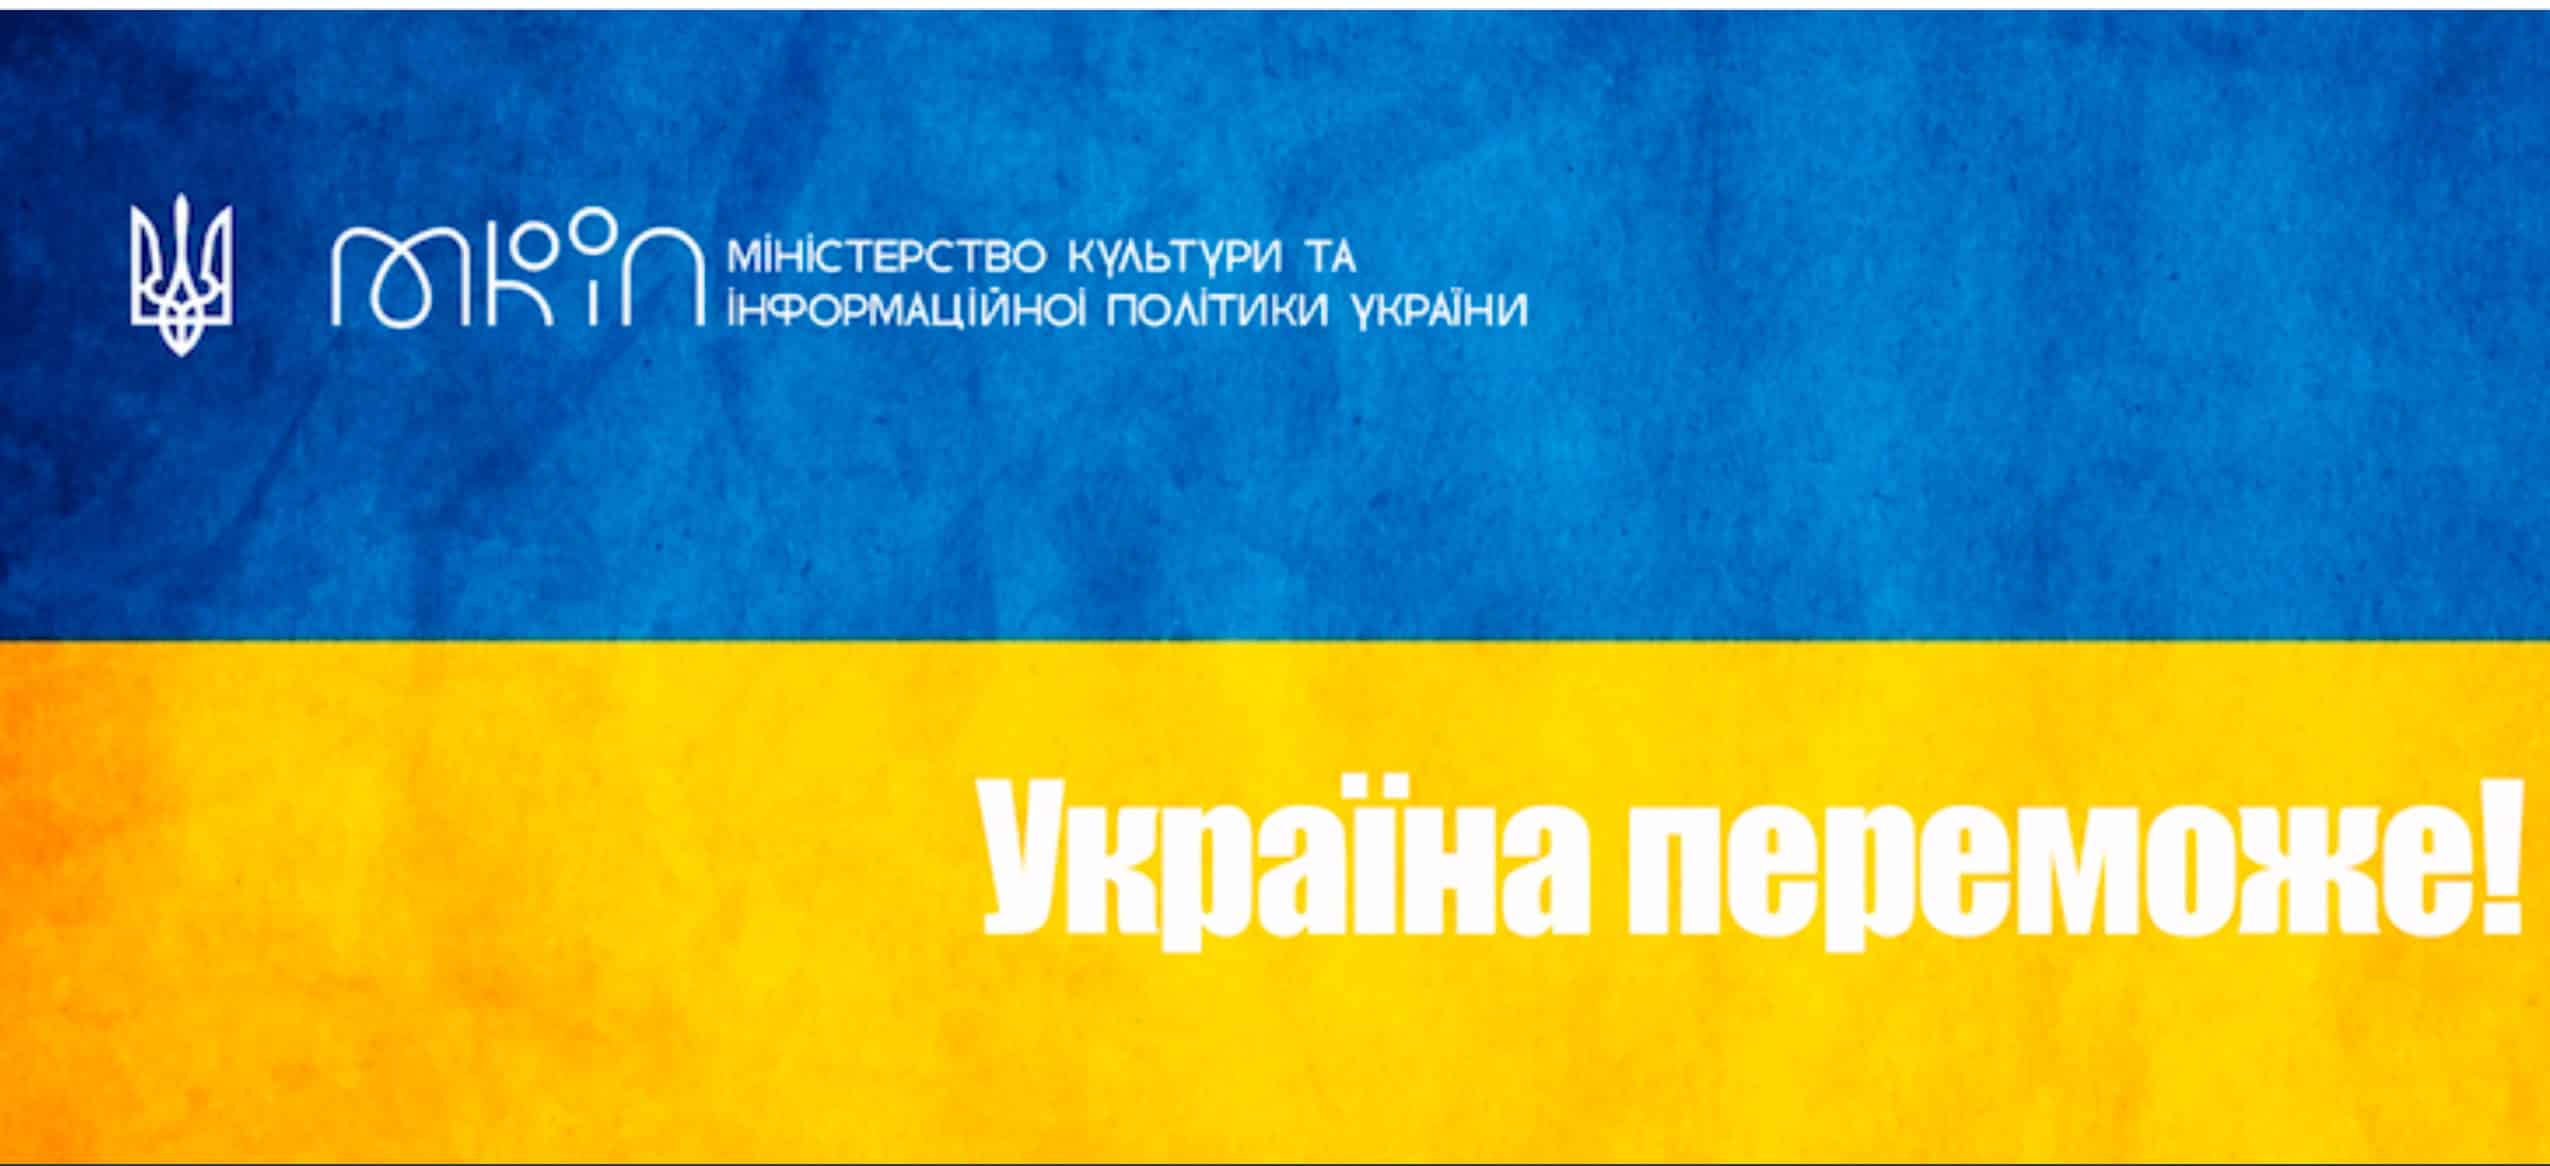 Le ministère de la Culture et de la Politique de l’information de l’Ukraine a recommandé de ne pas prolonger le bail de la Laure des Grottes de Kiev